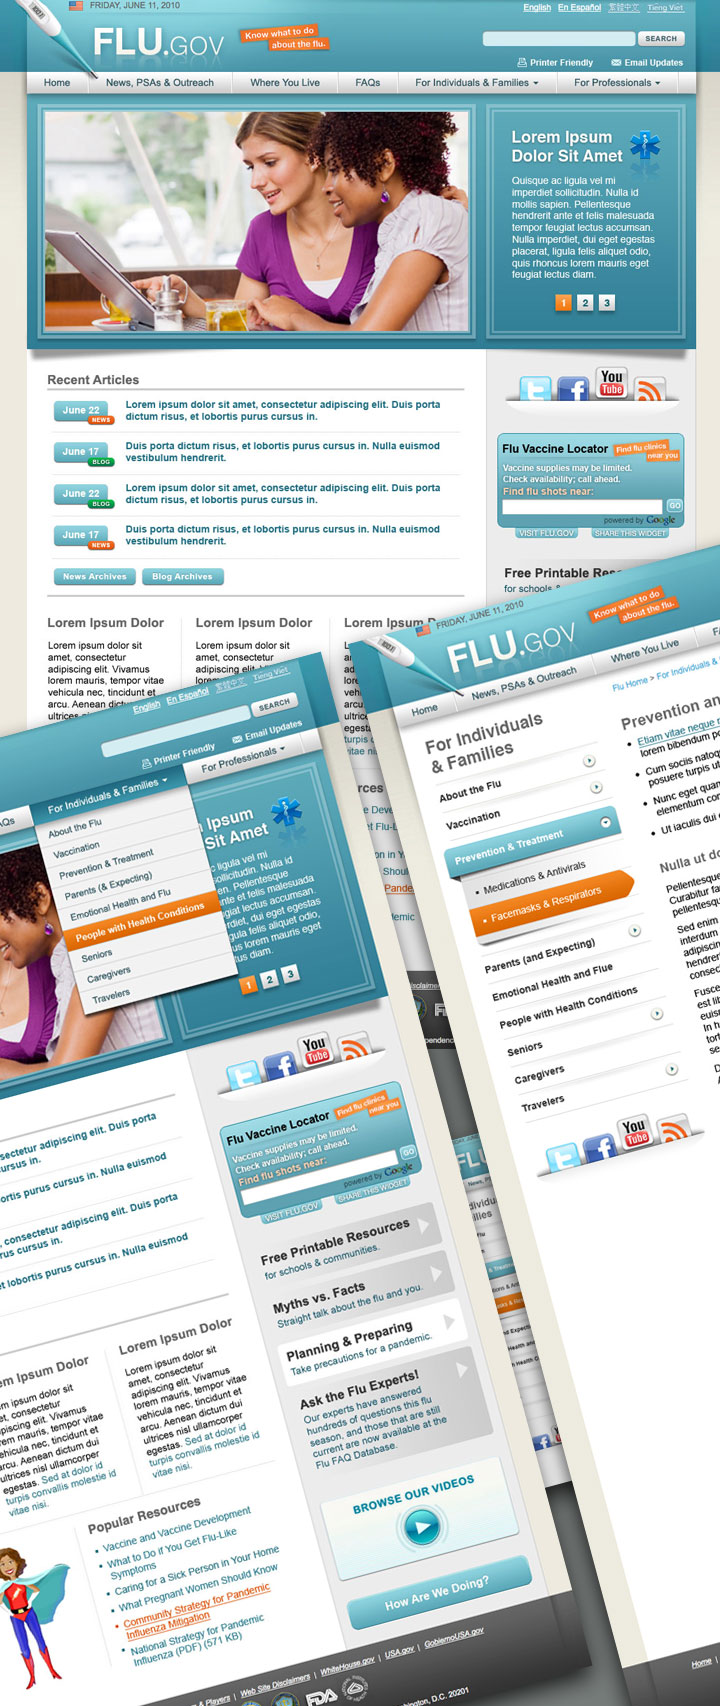 Flu.gov screens